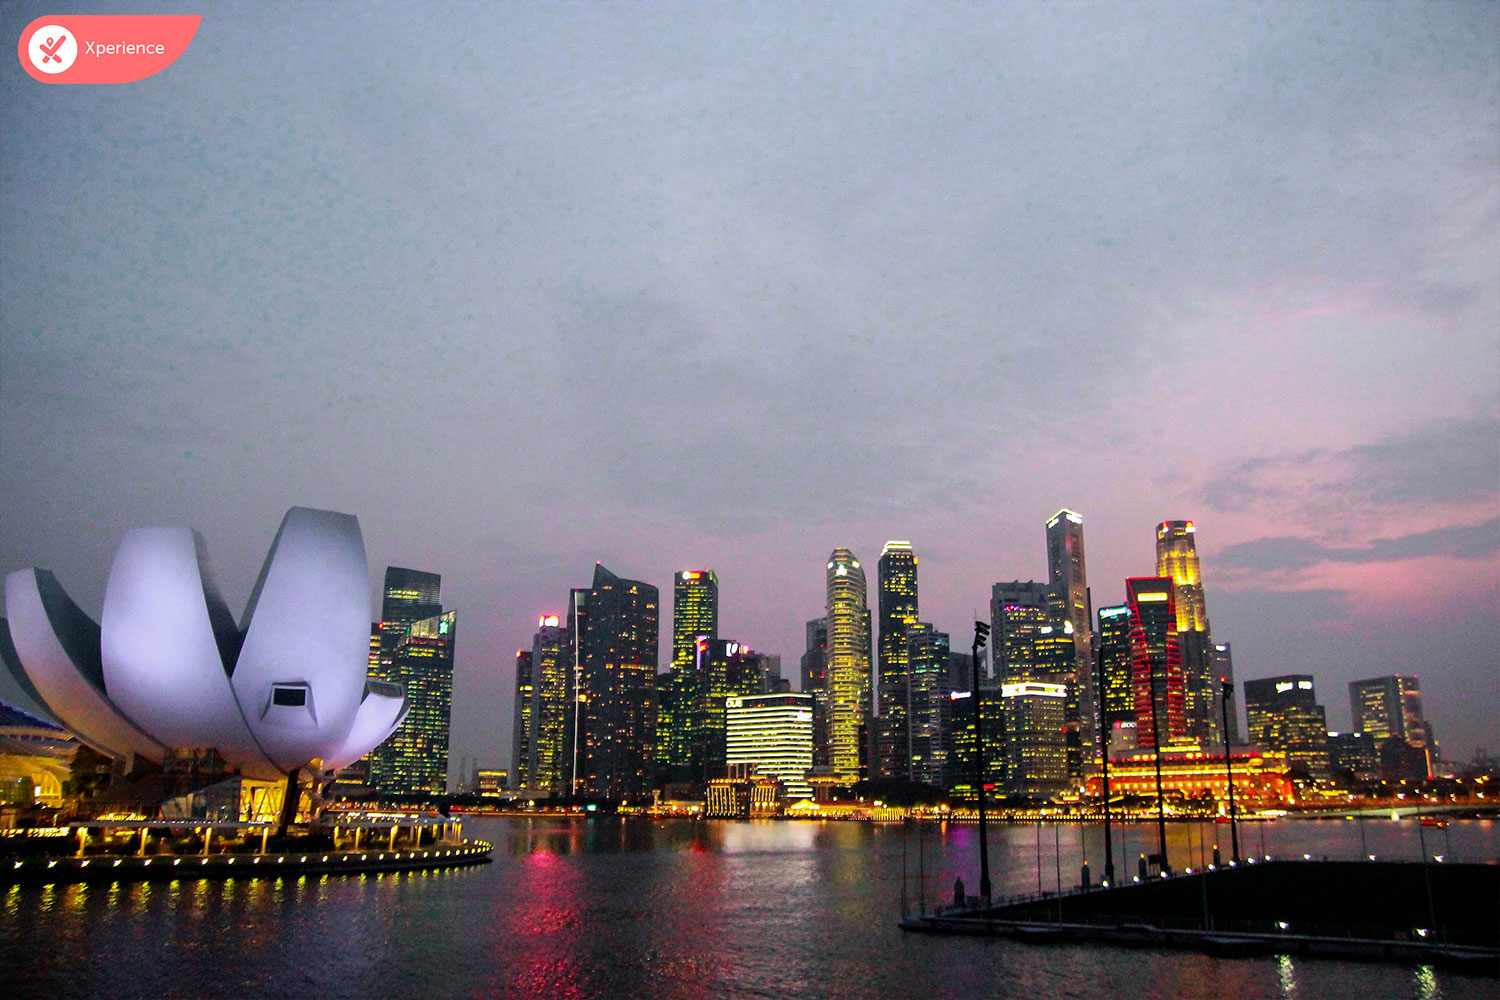 Du lịch Singapore tự túc 4 ngày 3 đêm